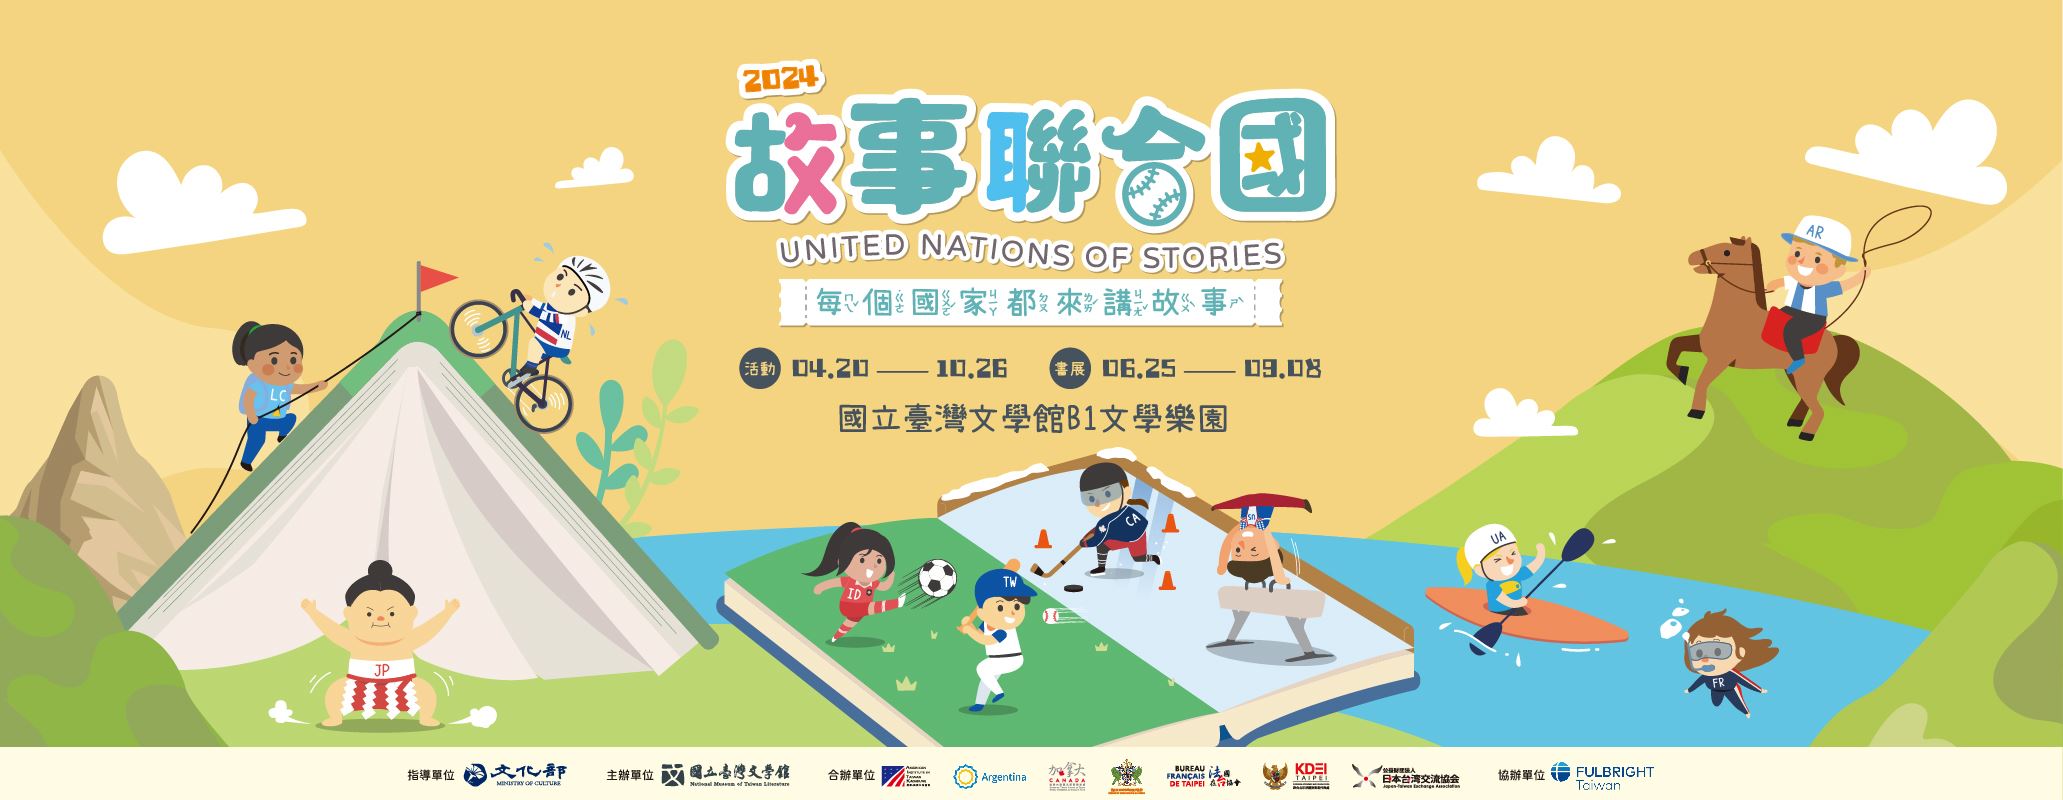 Le musée national de la littérature taïwanaise propose « les Nations unies des histoires »